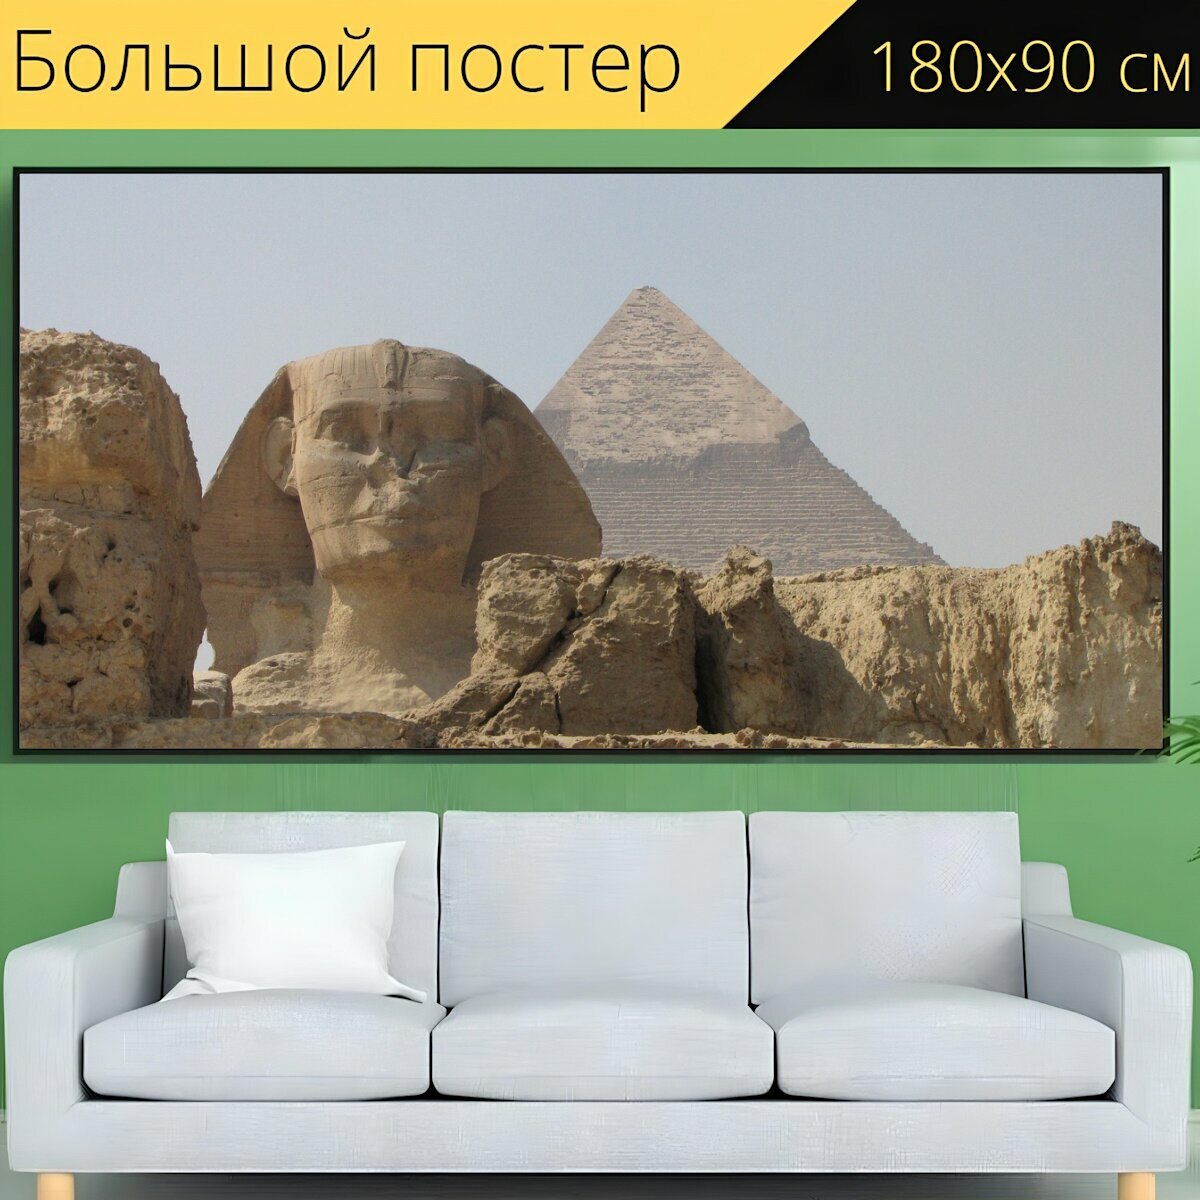 Большой постер "Египет, пирамида, пирамиды" 180 x 90 см. для интерьера